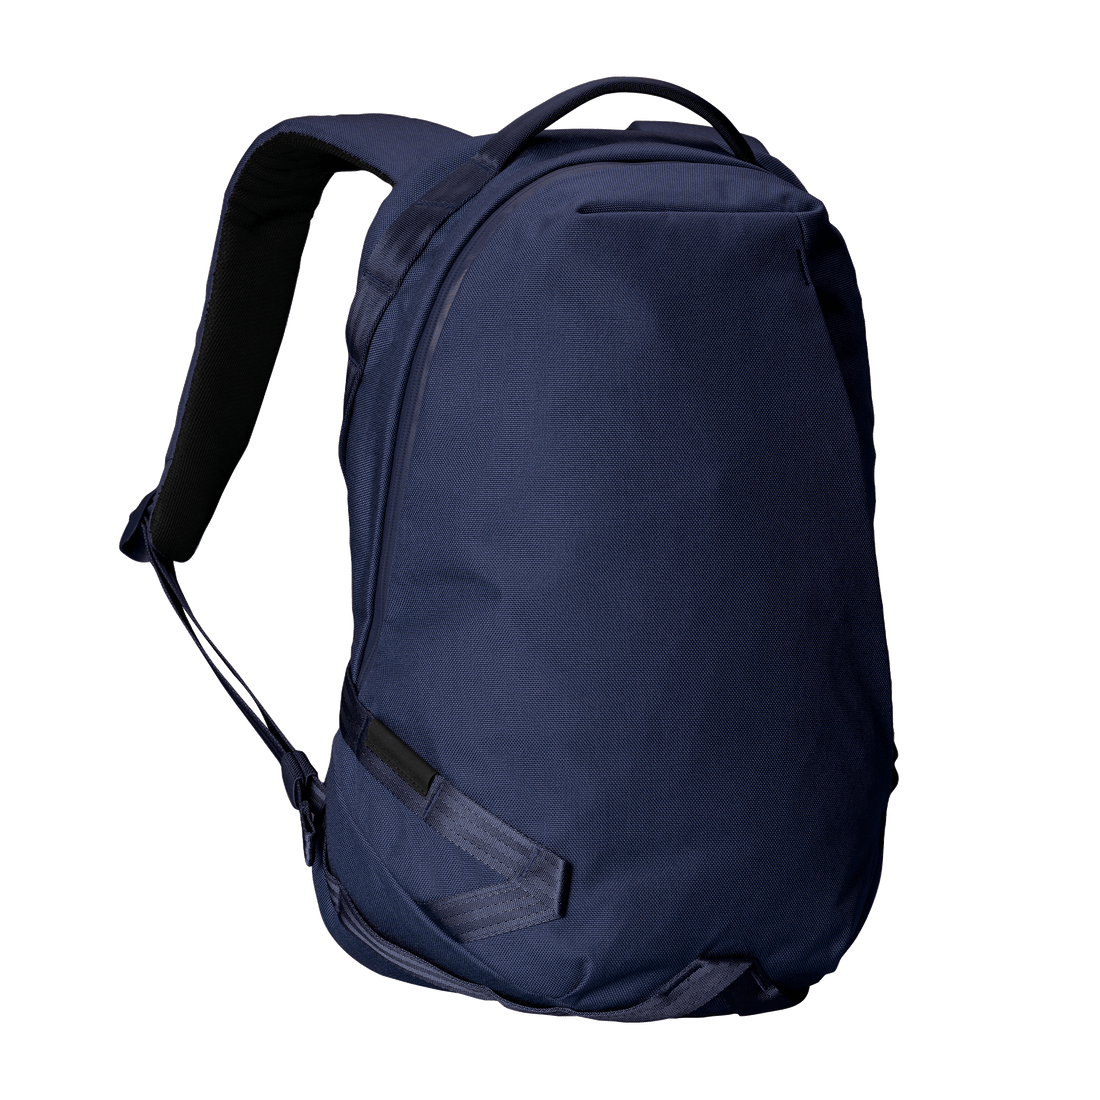 8,170円Able Carry  Daily Backpack Cordura Black